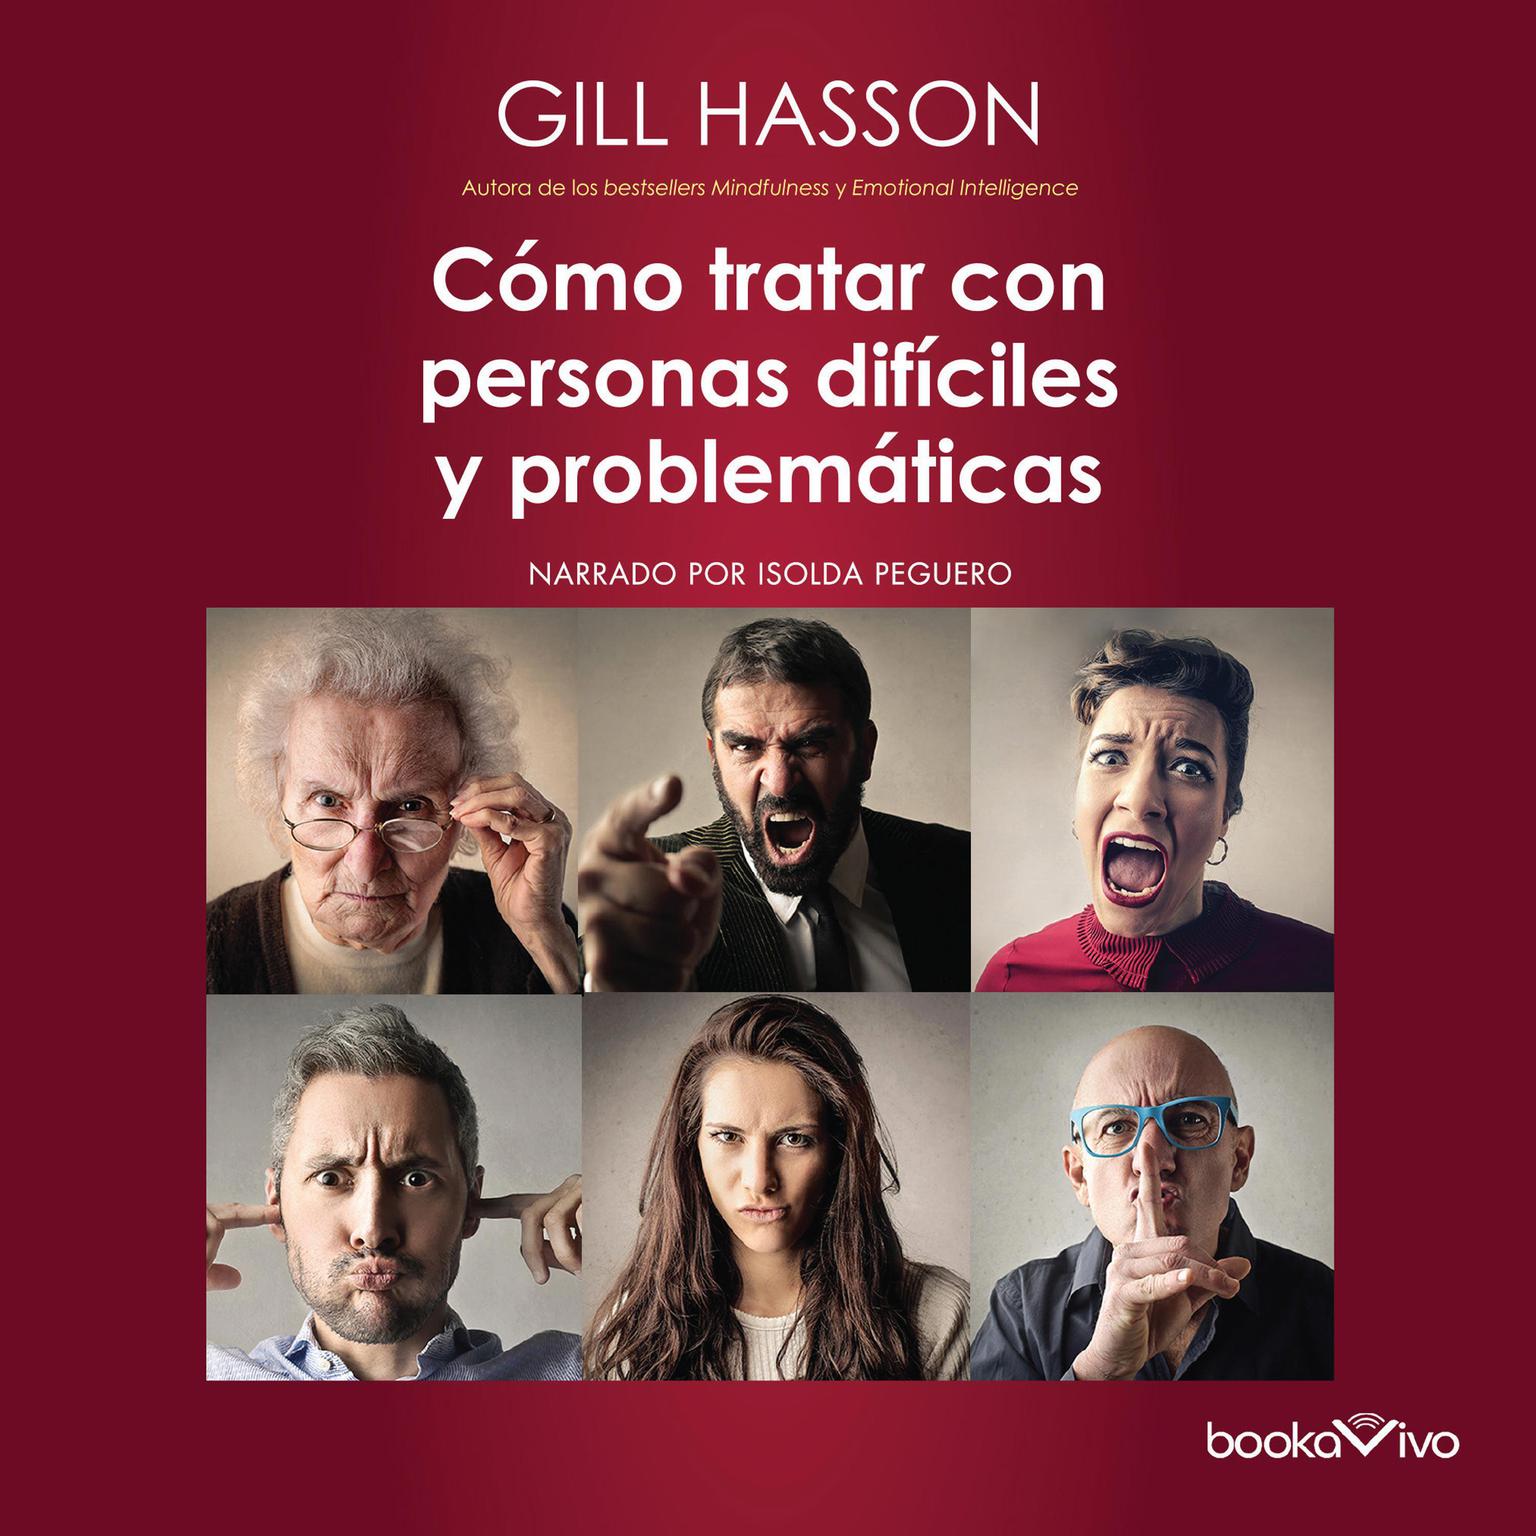 Cómo tratar con personas difíciles y problemáticas Audiobook, by Gill Hasson